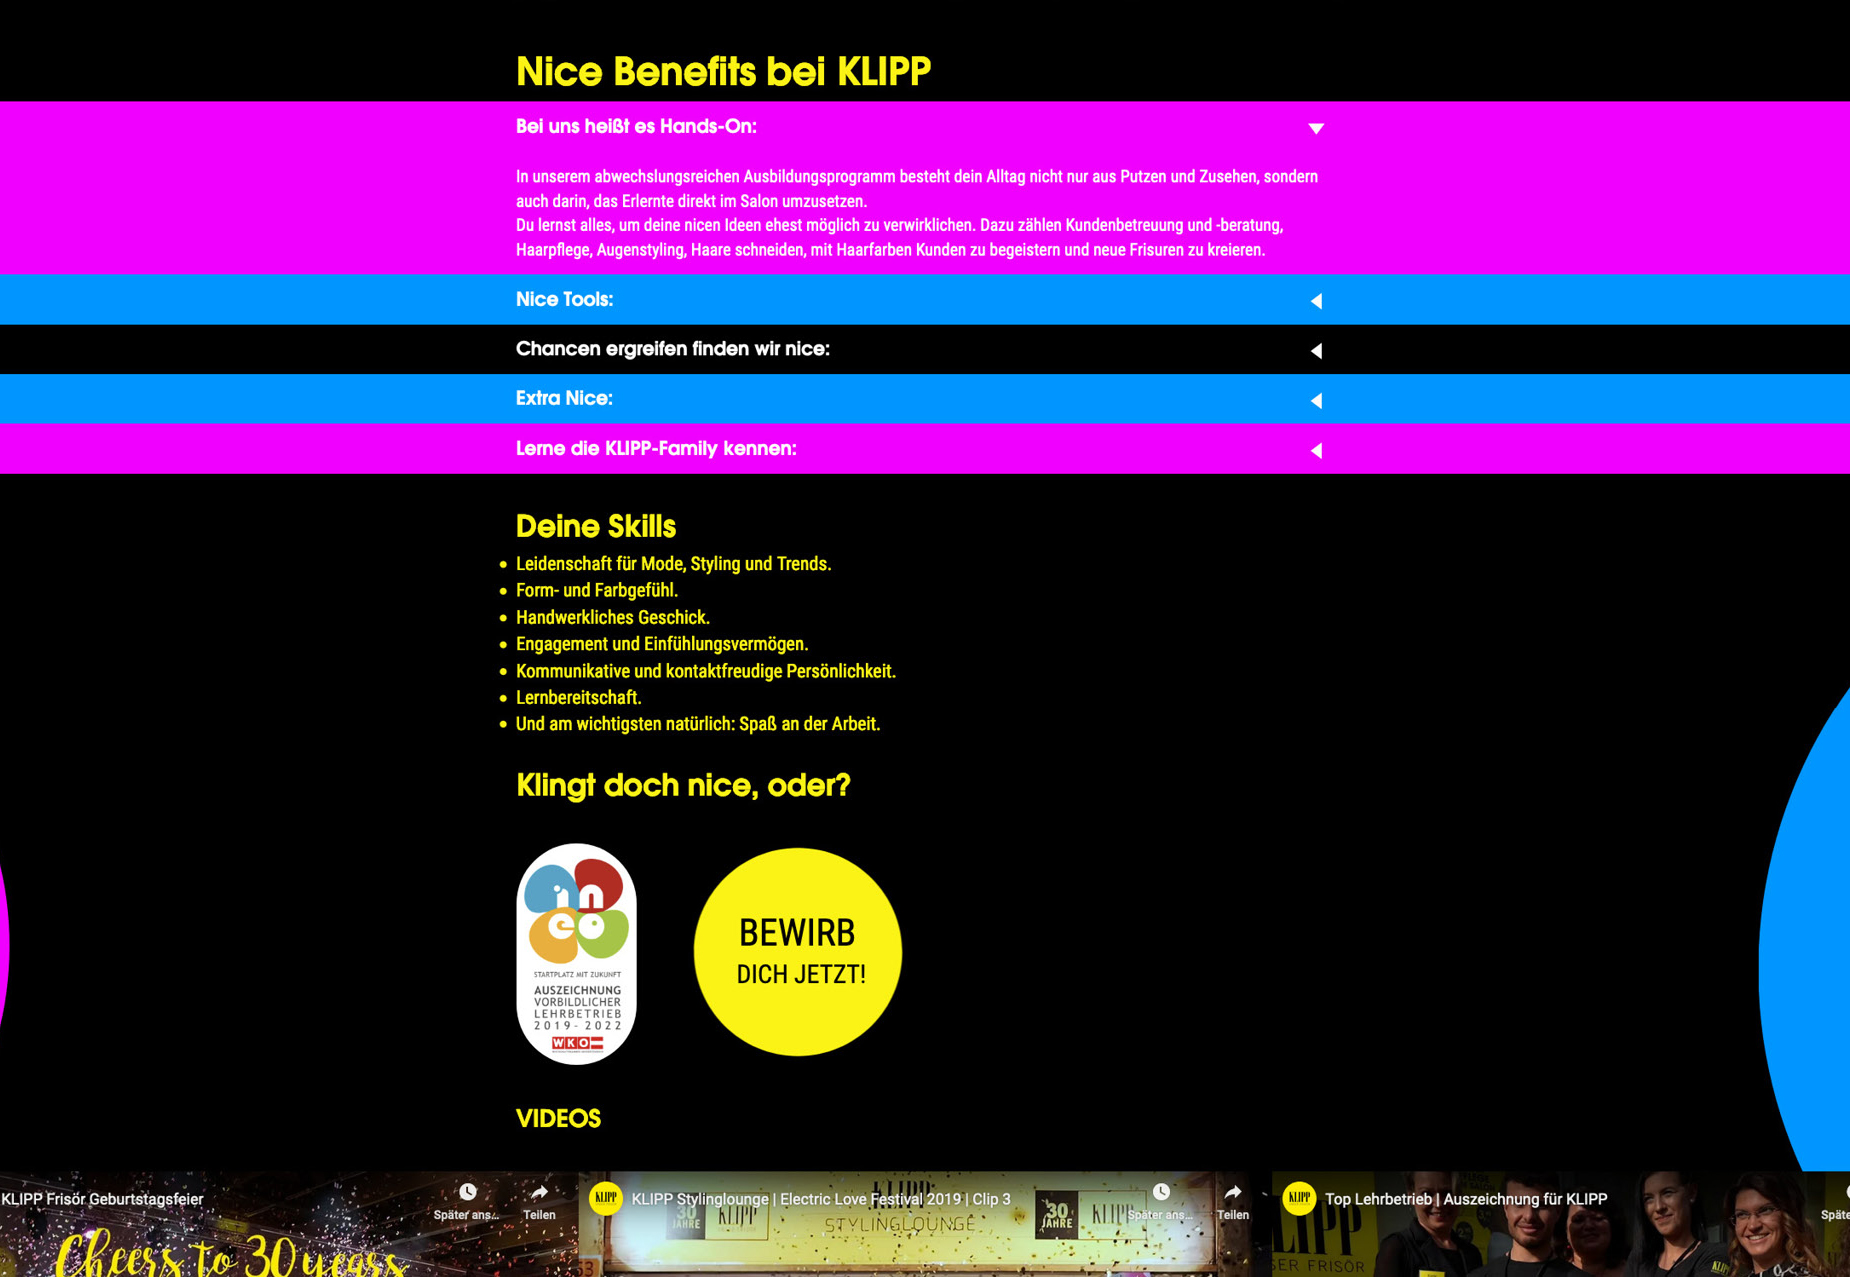 Screenshot von der Folgeseite "Benefits bei Klipp" www.klipp.at